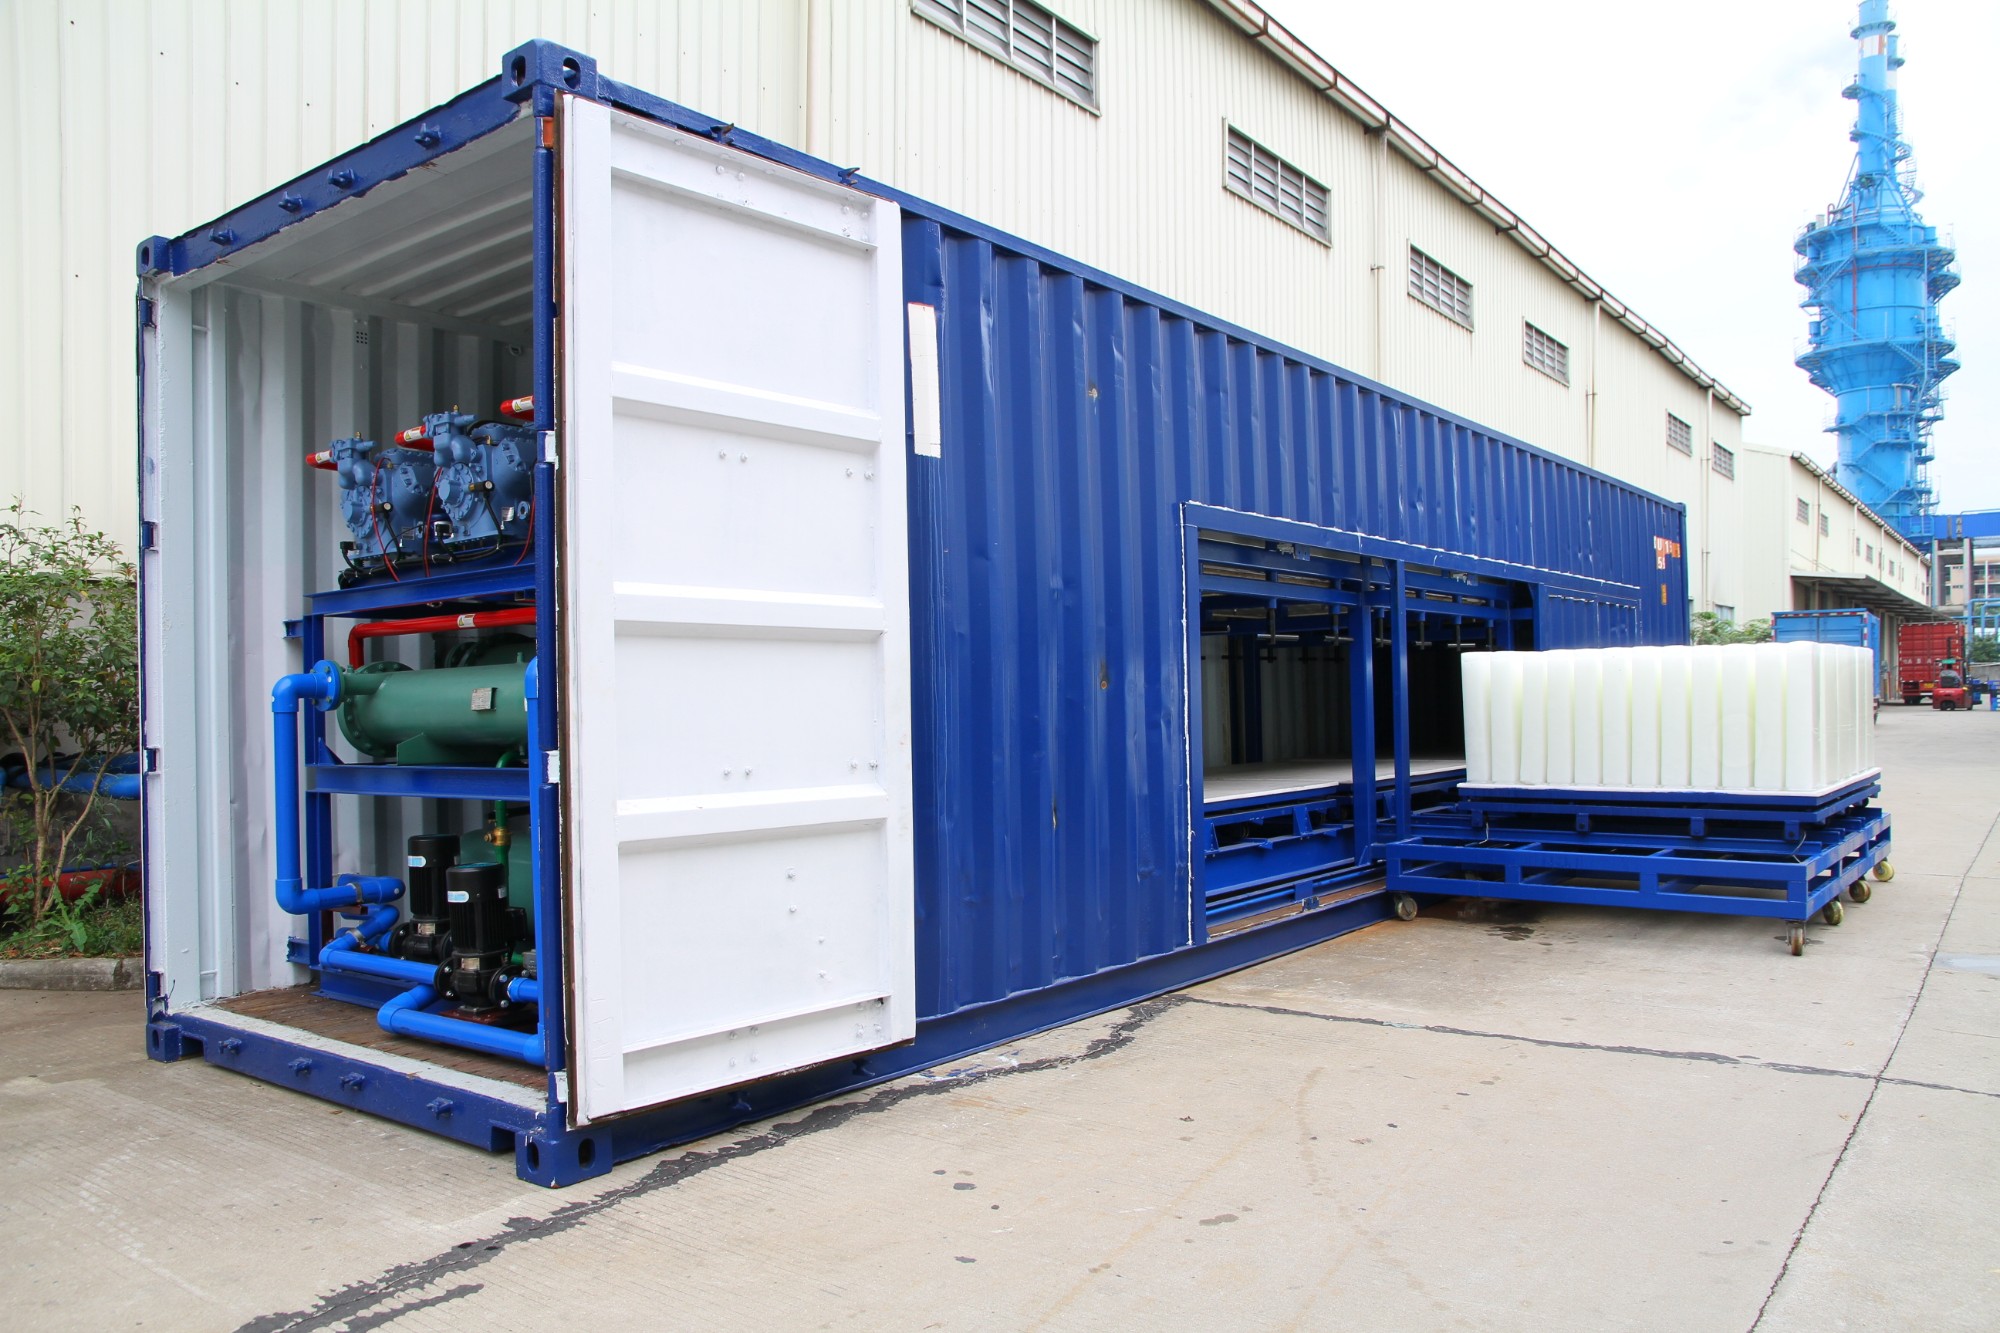 Kaufen Direktkühlende 10-Tonnen-Containerblock-Eismaschine aus Aluminium;Direktkühlende 10-Tonnen-Containerblock-Eismaschine aus Aluminium Preis;Direktkühlende 10-Tonnen-Containerblock-Eismaschine aus Aluminium Marken;Direktkühlende 10-Tonnen-Containerblock-Eismaschine aus Aluminium Hersteller;Direktkühlende 10-Tonnen-Containerblock-Eismaschine aus Aluminium Zitat;Direktkühlende 10-Tonnen-Containerblock-Eismaschine aus Aluminium Unternehmen